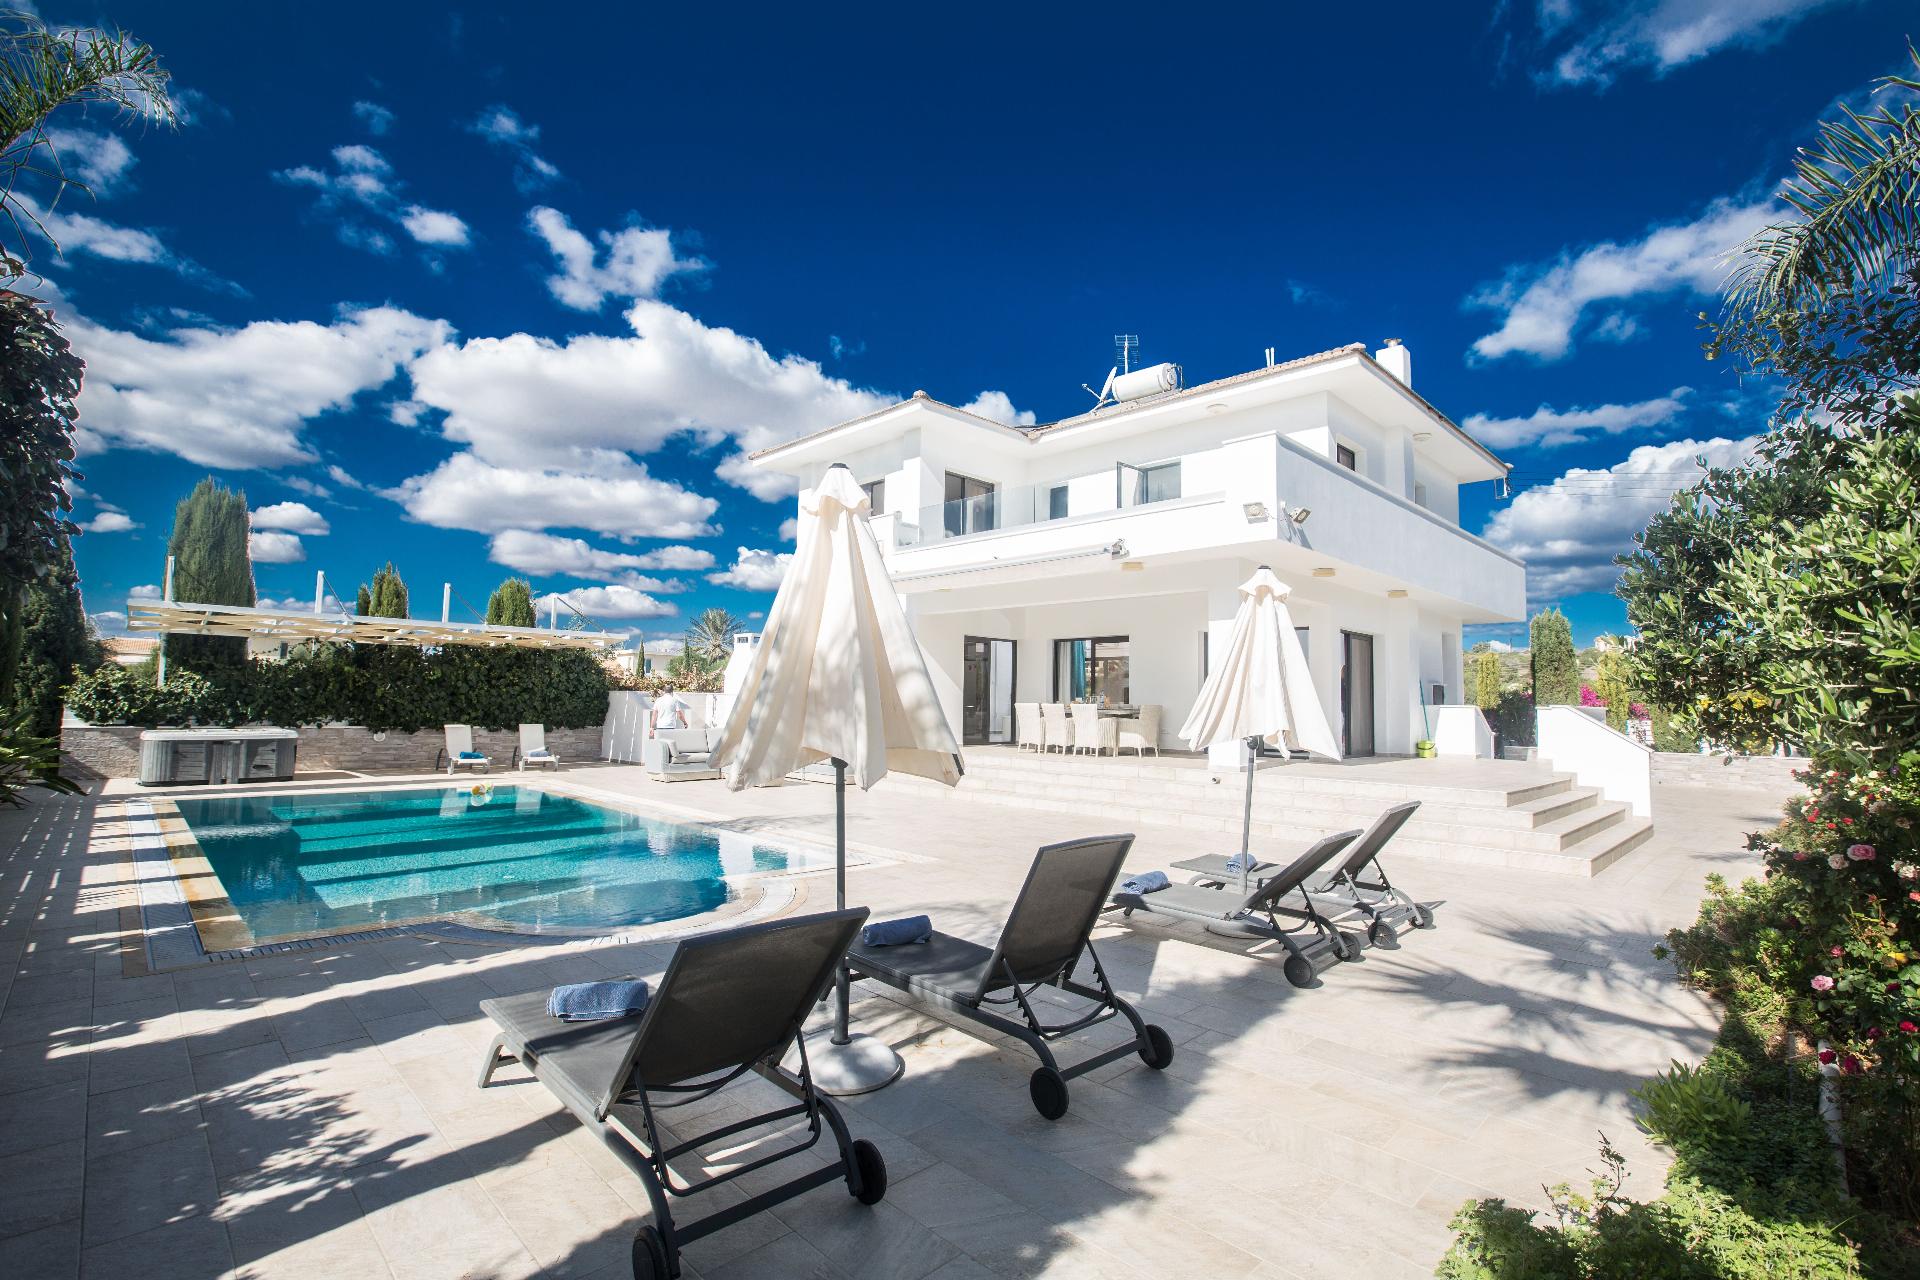 Ferienhaus mit Privatpool für 8 Personen in P Ferienhaus in Zypern